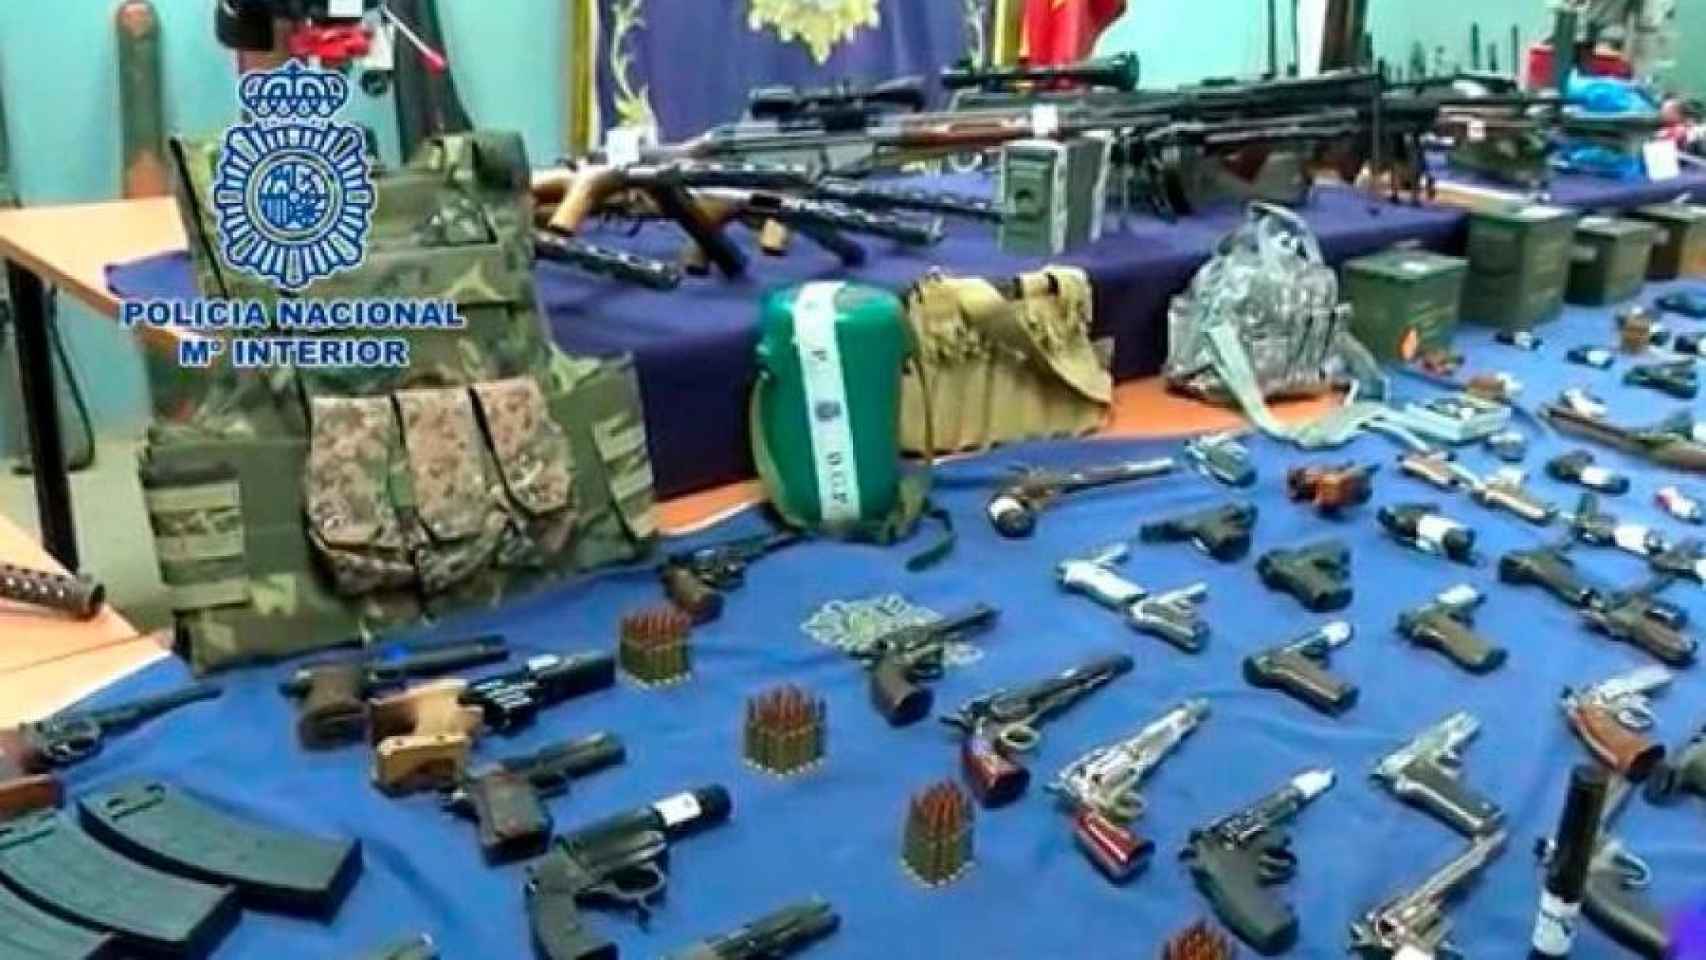 La Policía Nacional incautó más de 300 armas